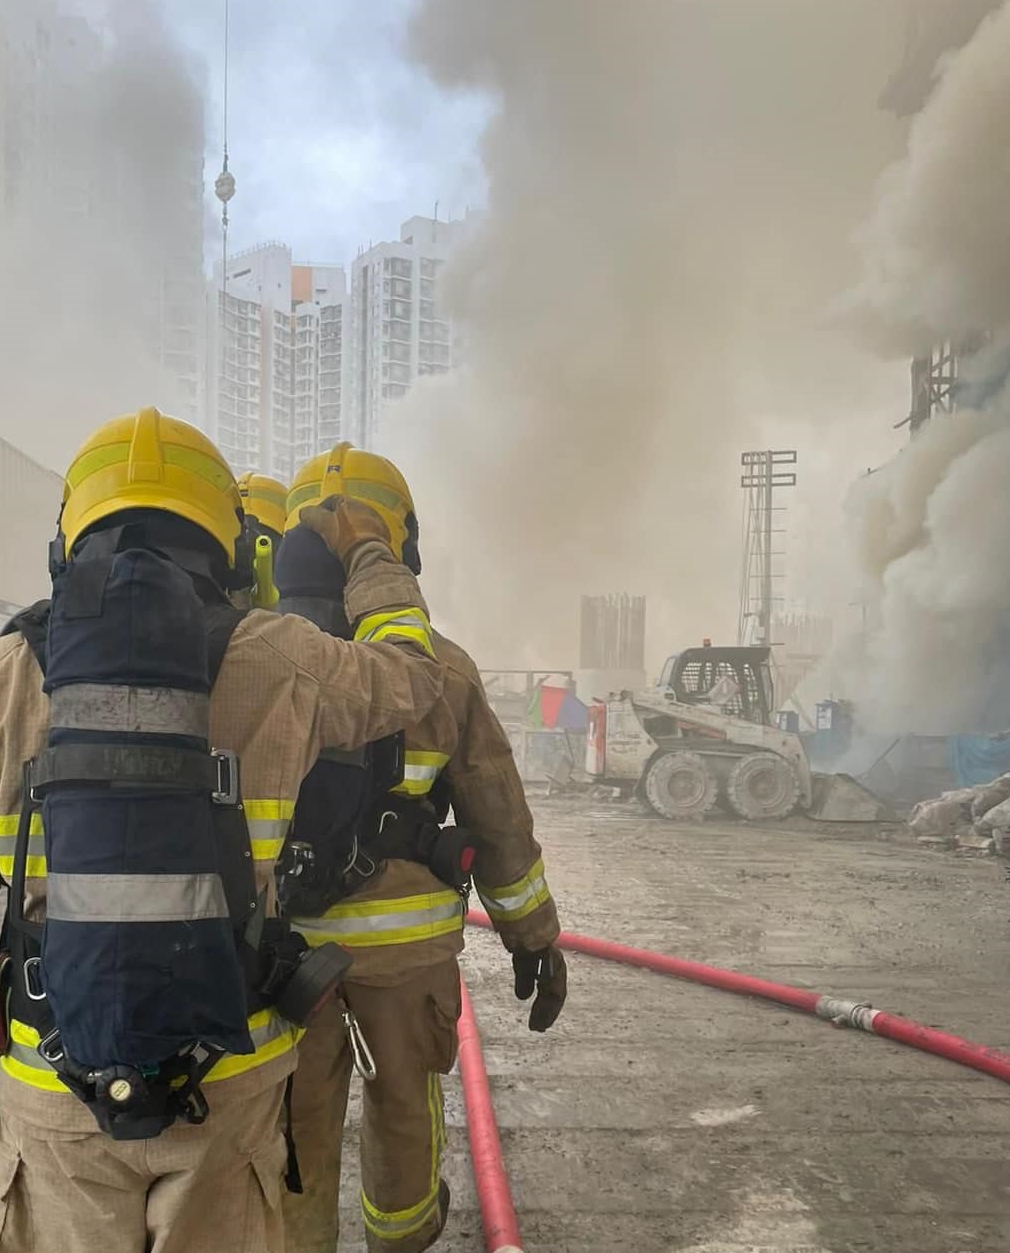 消防員射水灌救。fb香港消防處 Hong Kong Fire Services Department圖片